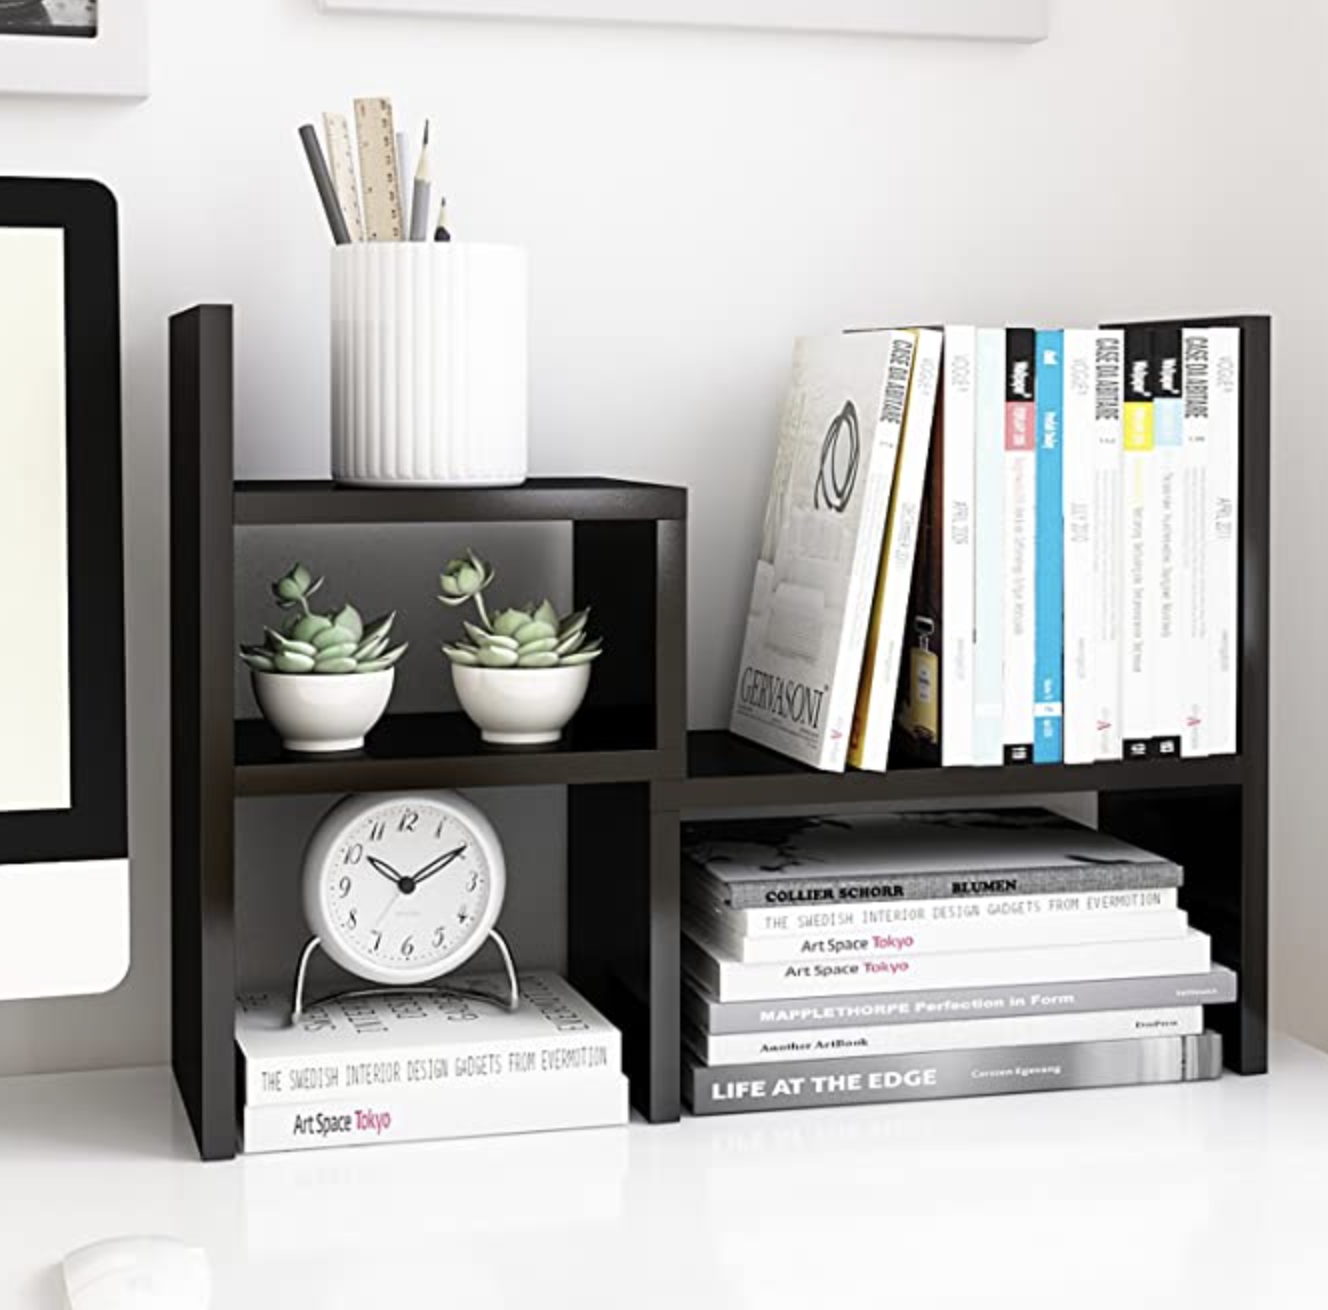 Home office essentials - desk organizer